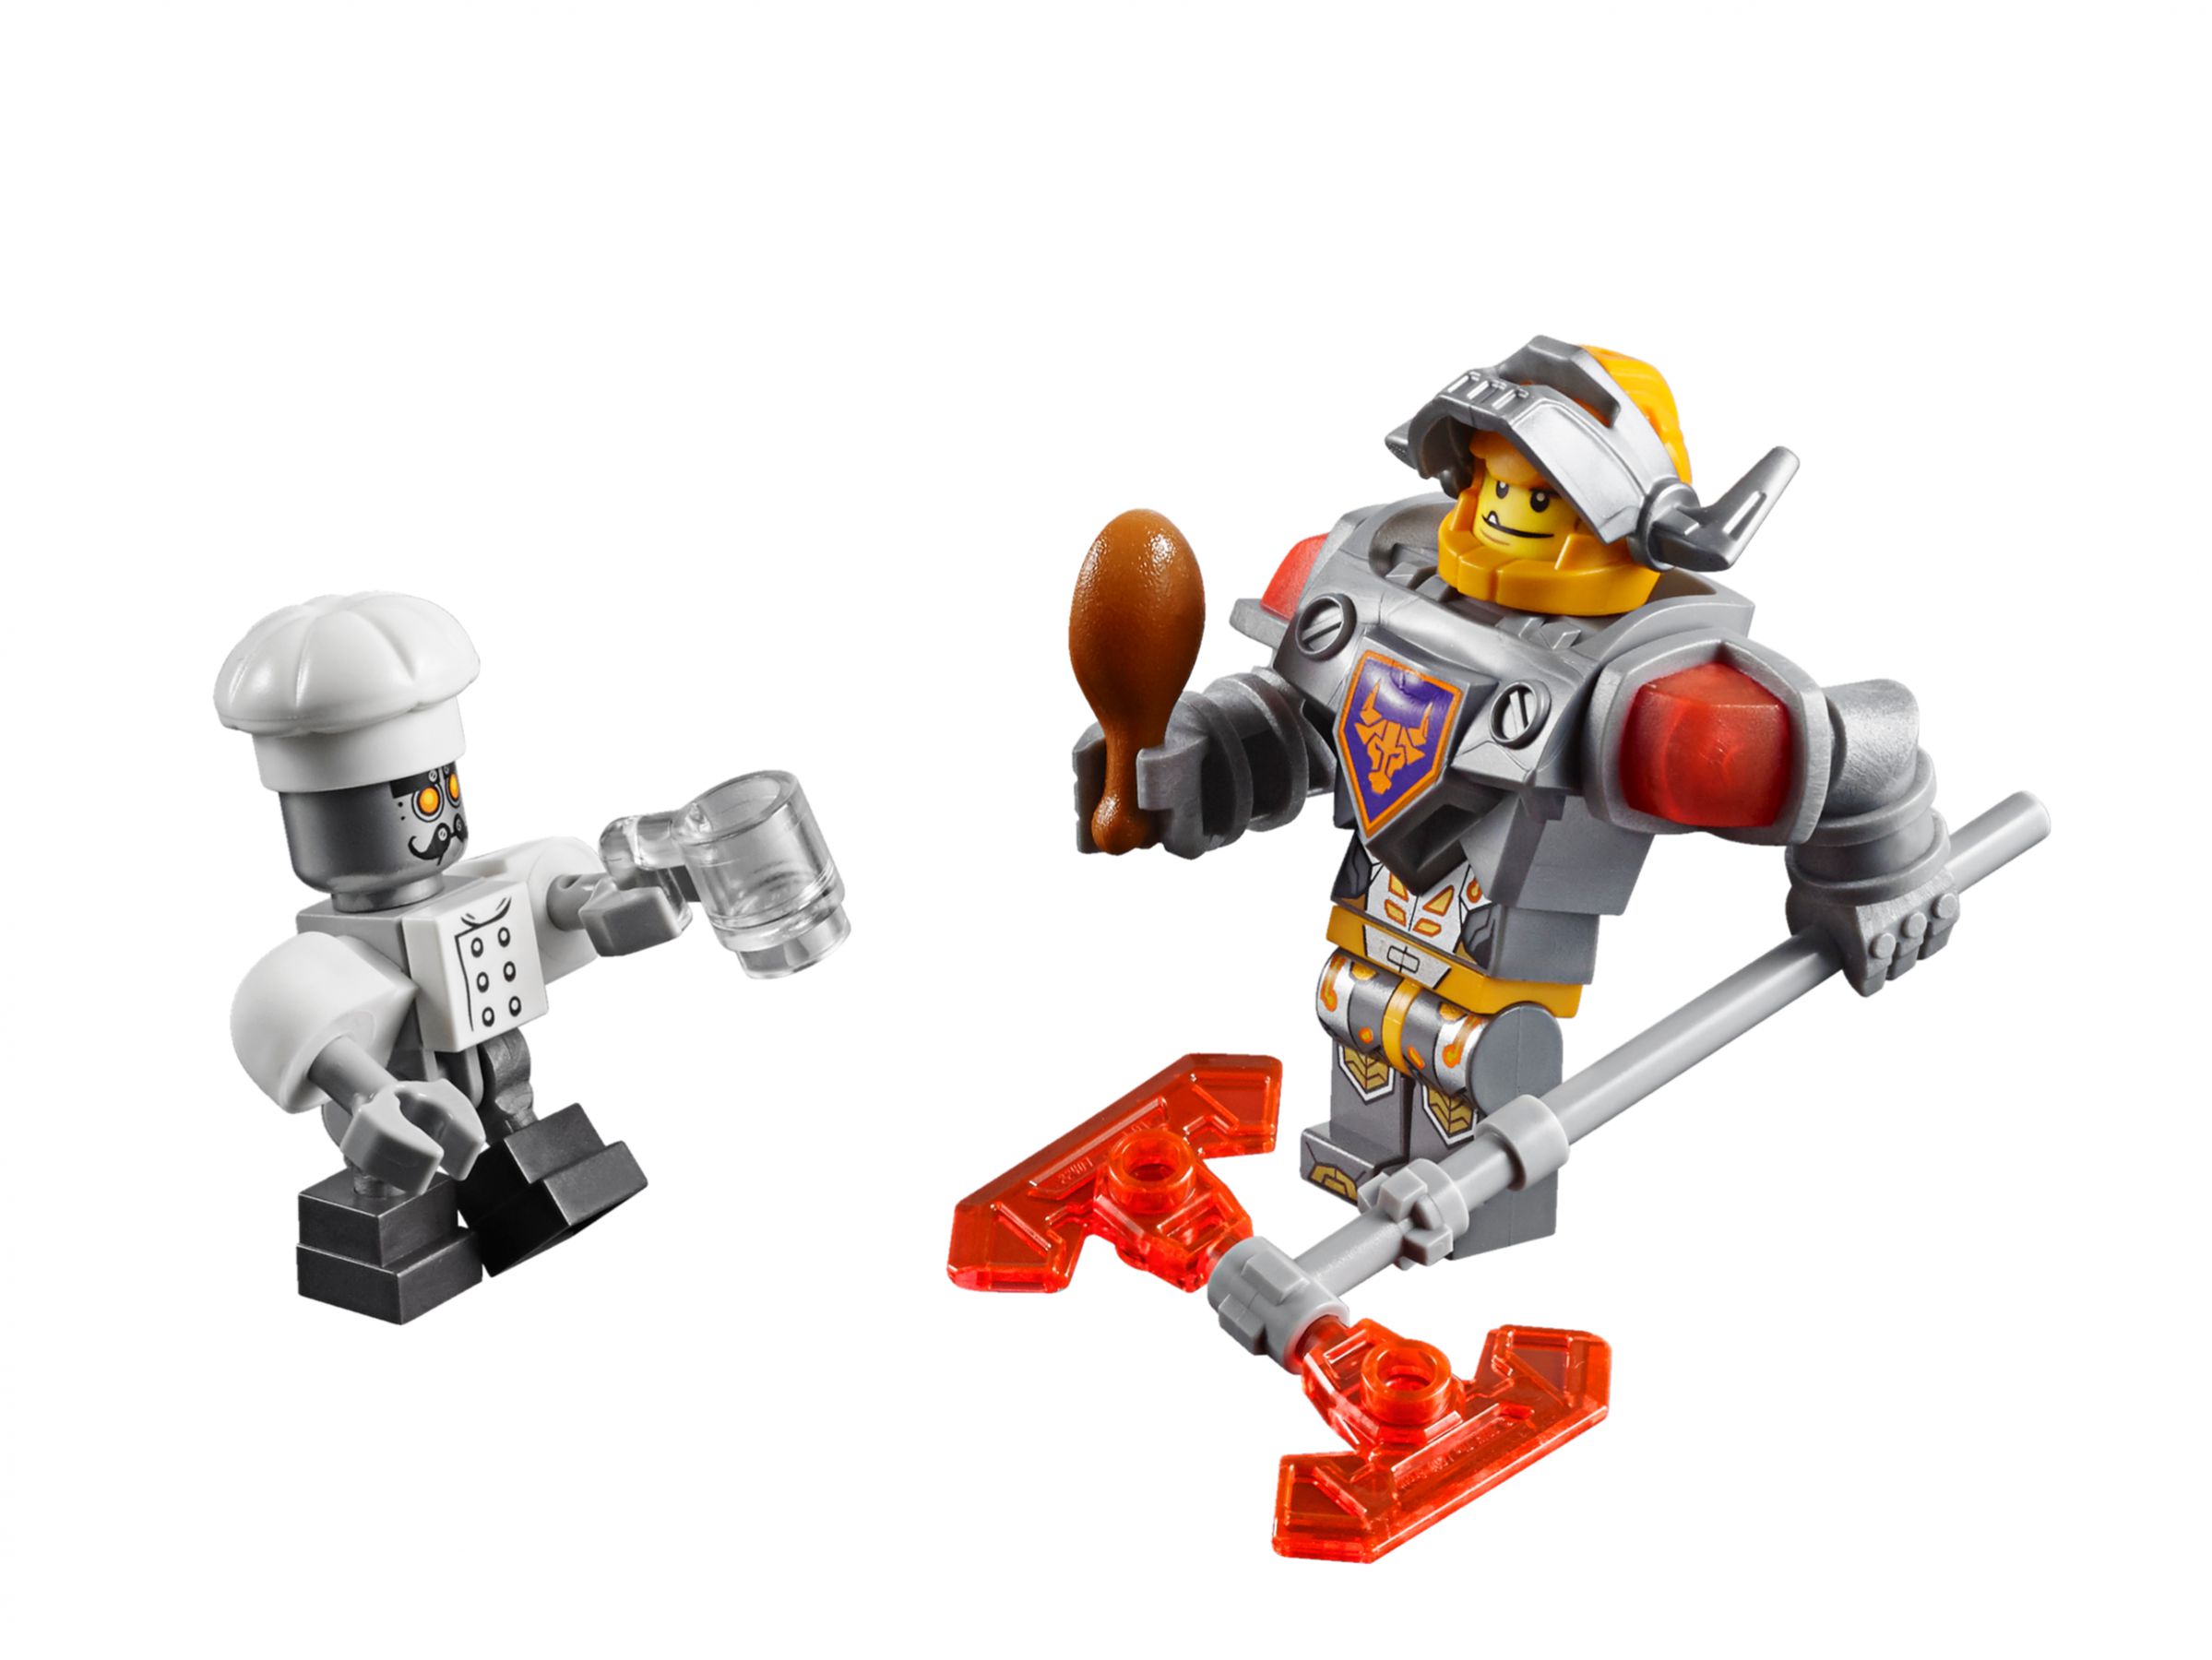 LEGO Nexo Knights 70317 Fortrex – Die rollende Festung LEGO_70317_alt12.jpg